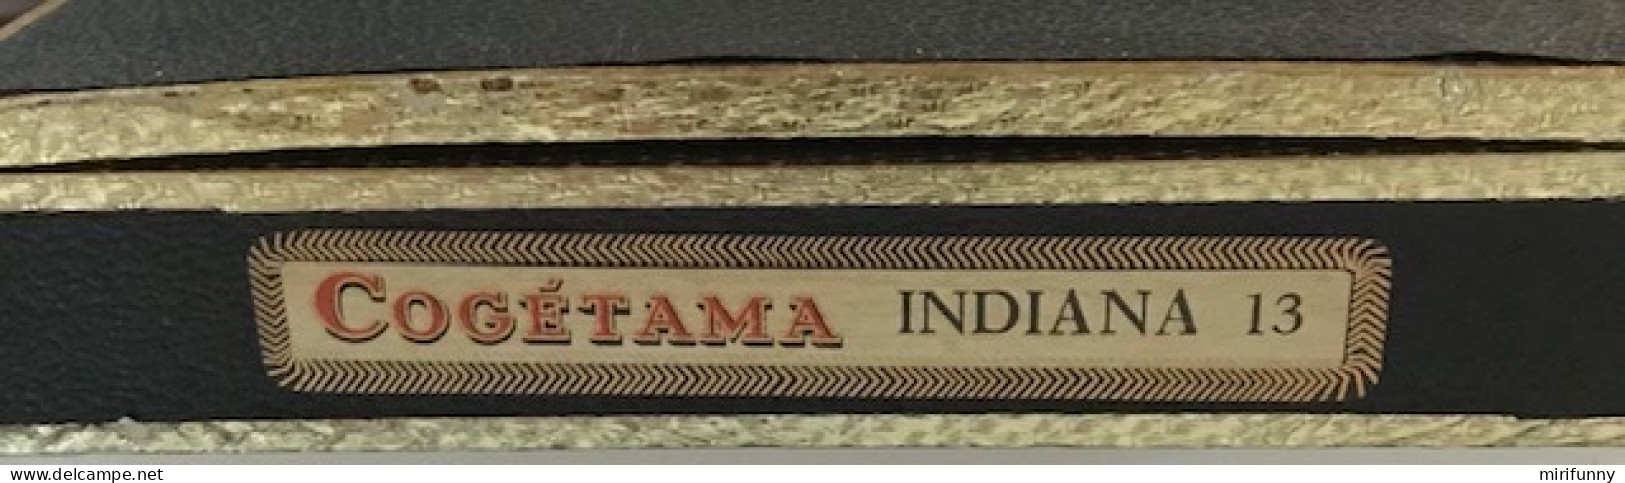 ANCIENNE BOITE EN BOIS VIDE CIGARES COGETAMA  INDIANA 13 " CAMPEMENTS INDIENS" - Cajas Para Tabaco (vacios)